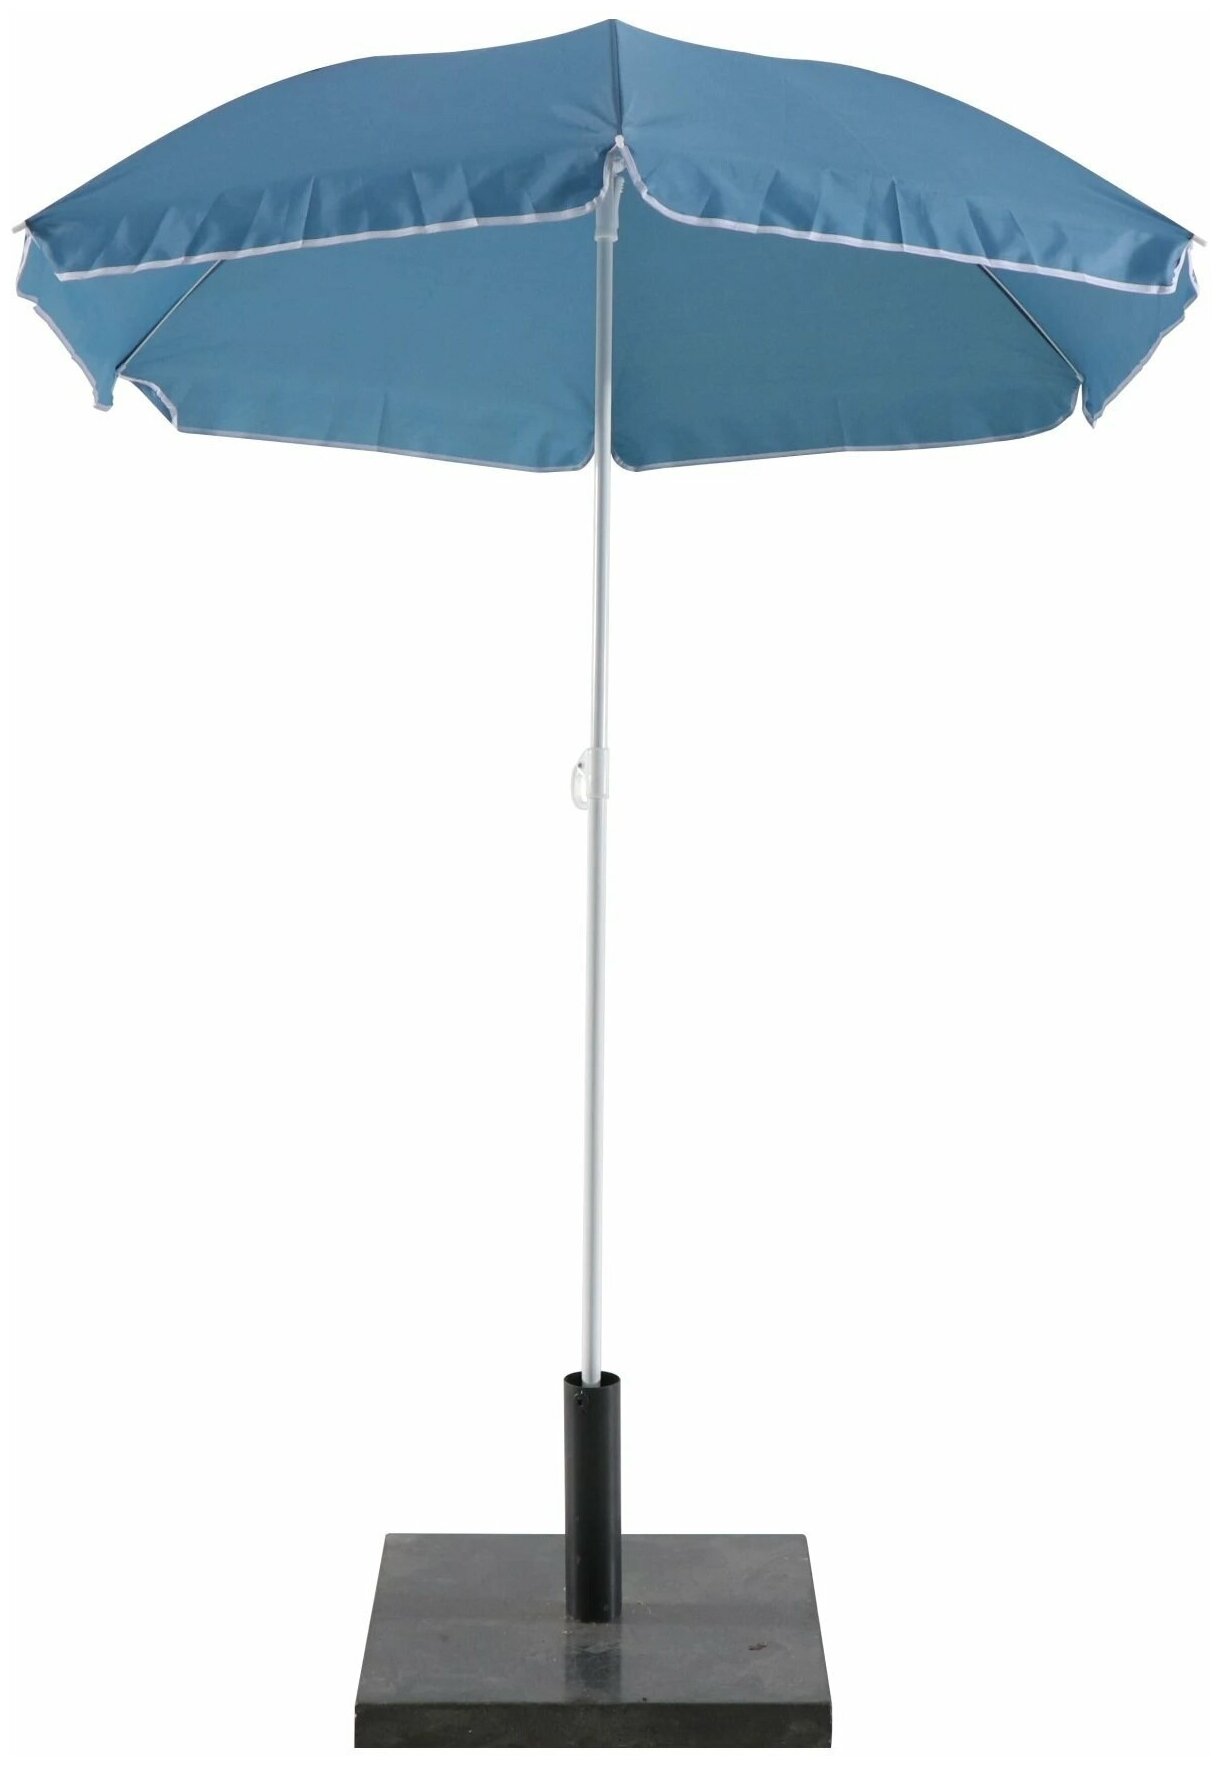 Пляжный зонт диаметр купола 180см L-185 см синий - фотография № 1